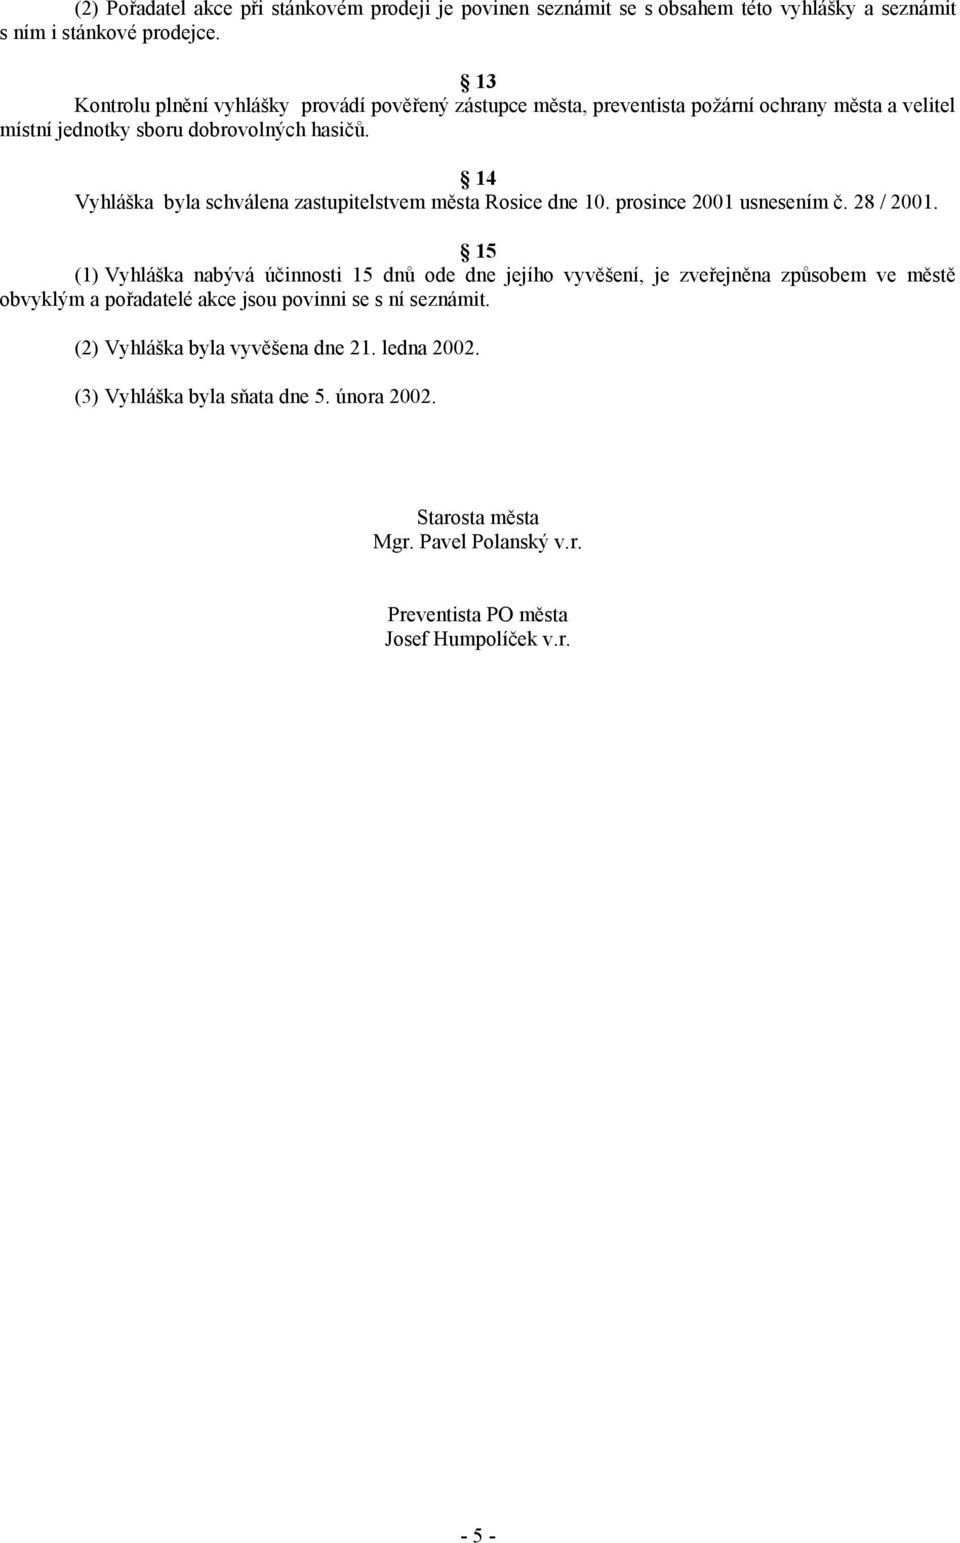 14 Vyhláška byla schválena zastupitelstvem města Rosice dne 10. prosince 2001 usnesením č. 28 / 2001.